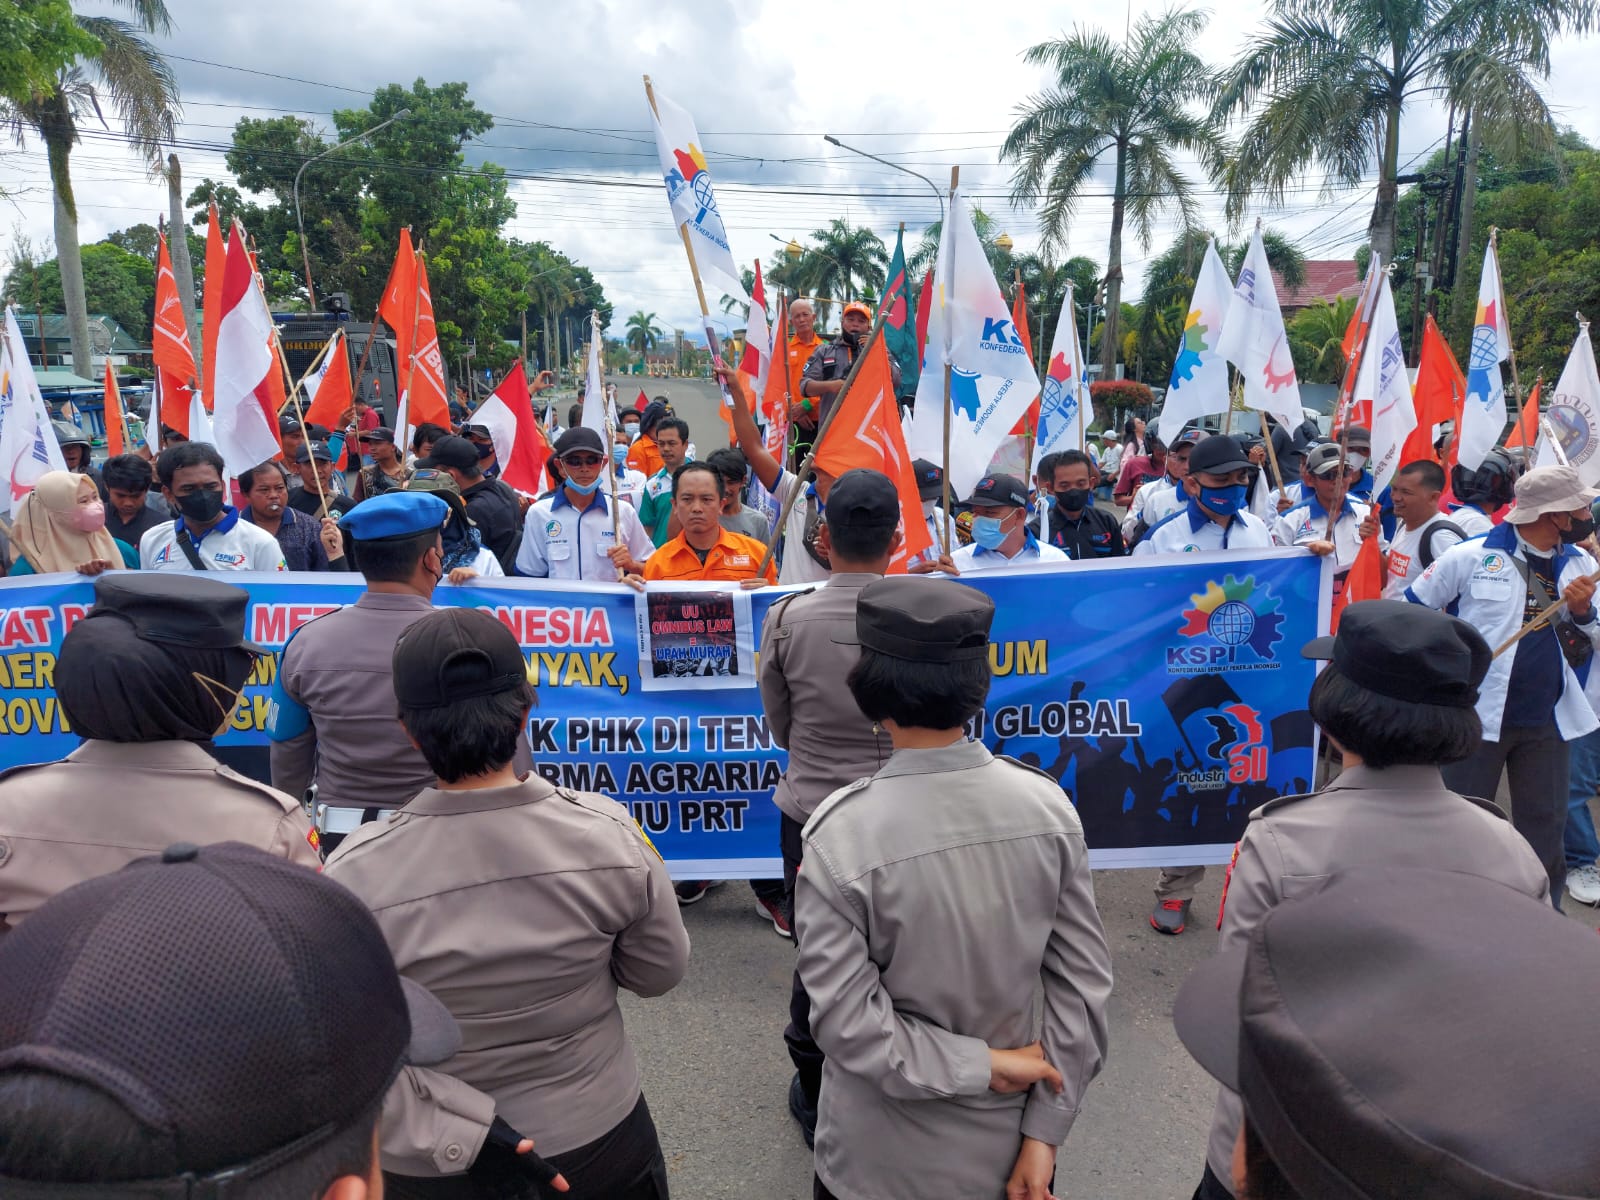 Demo di Depan Kantor Gub, Buruh Sampaikan 6 Tuntutan